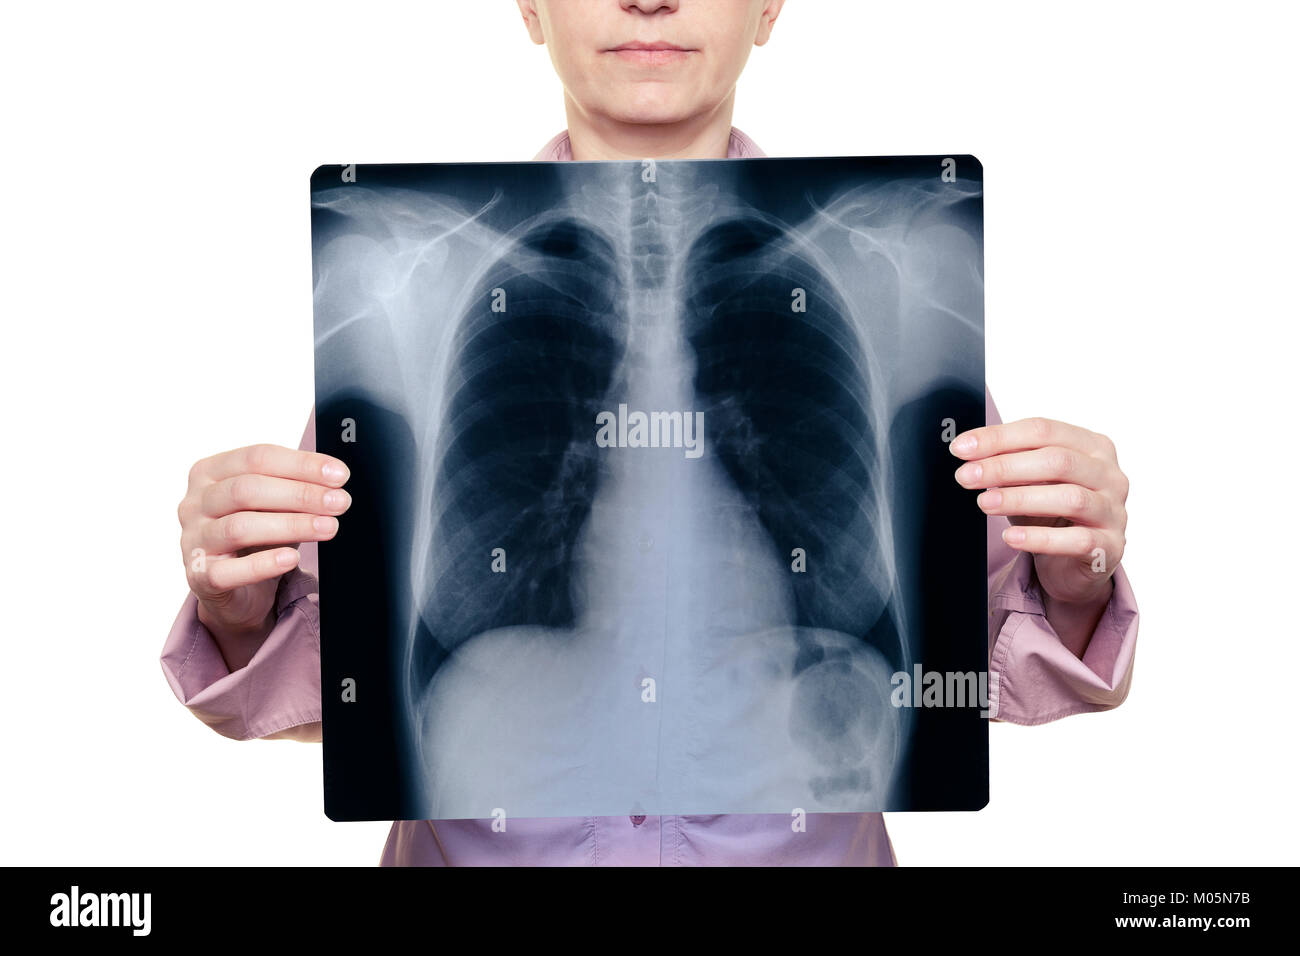 Frau mit einer Röntgenaufnahme vor Ihrem Körper Stockfoto